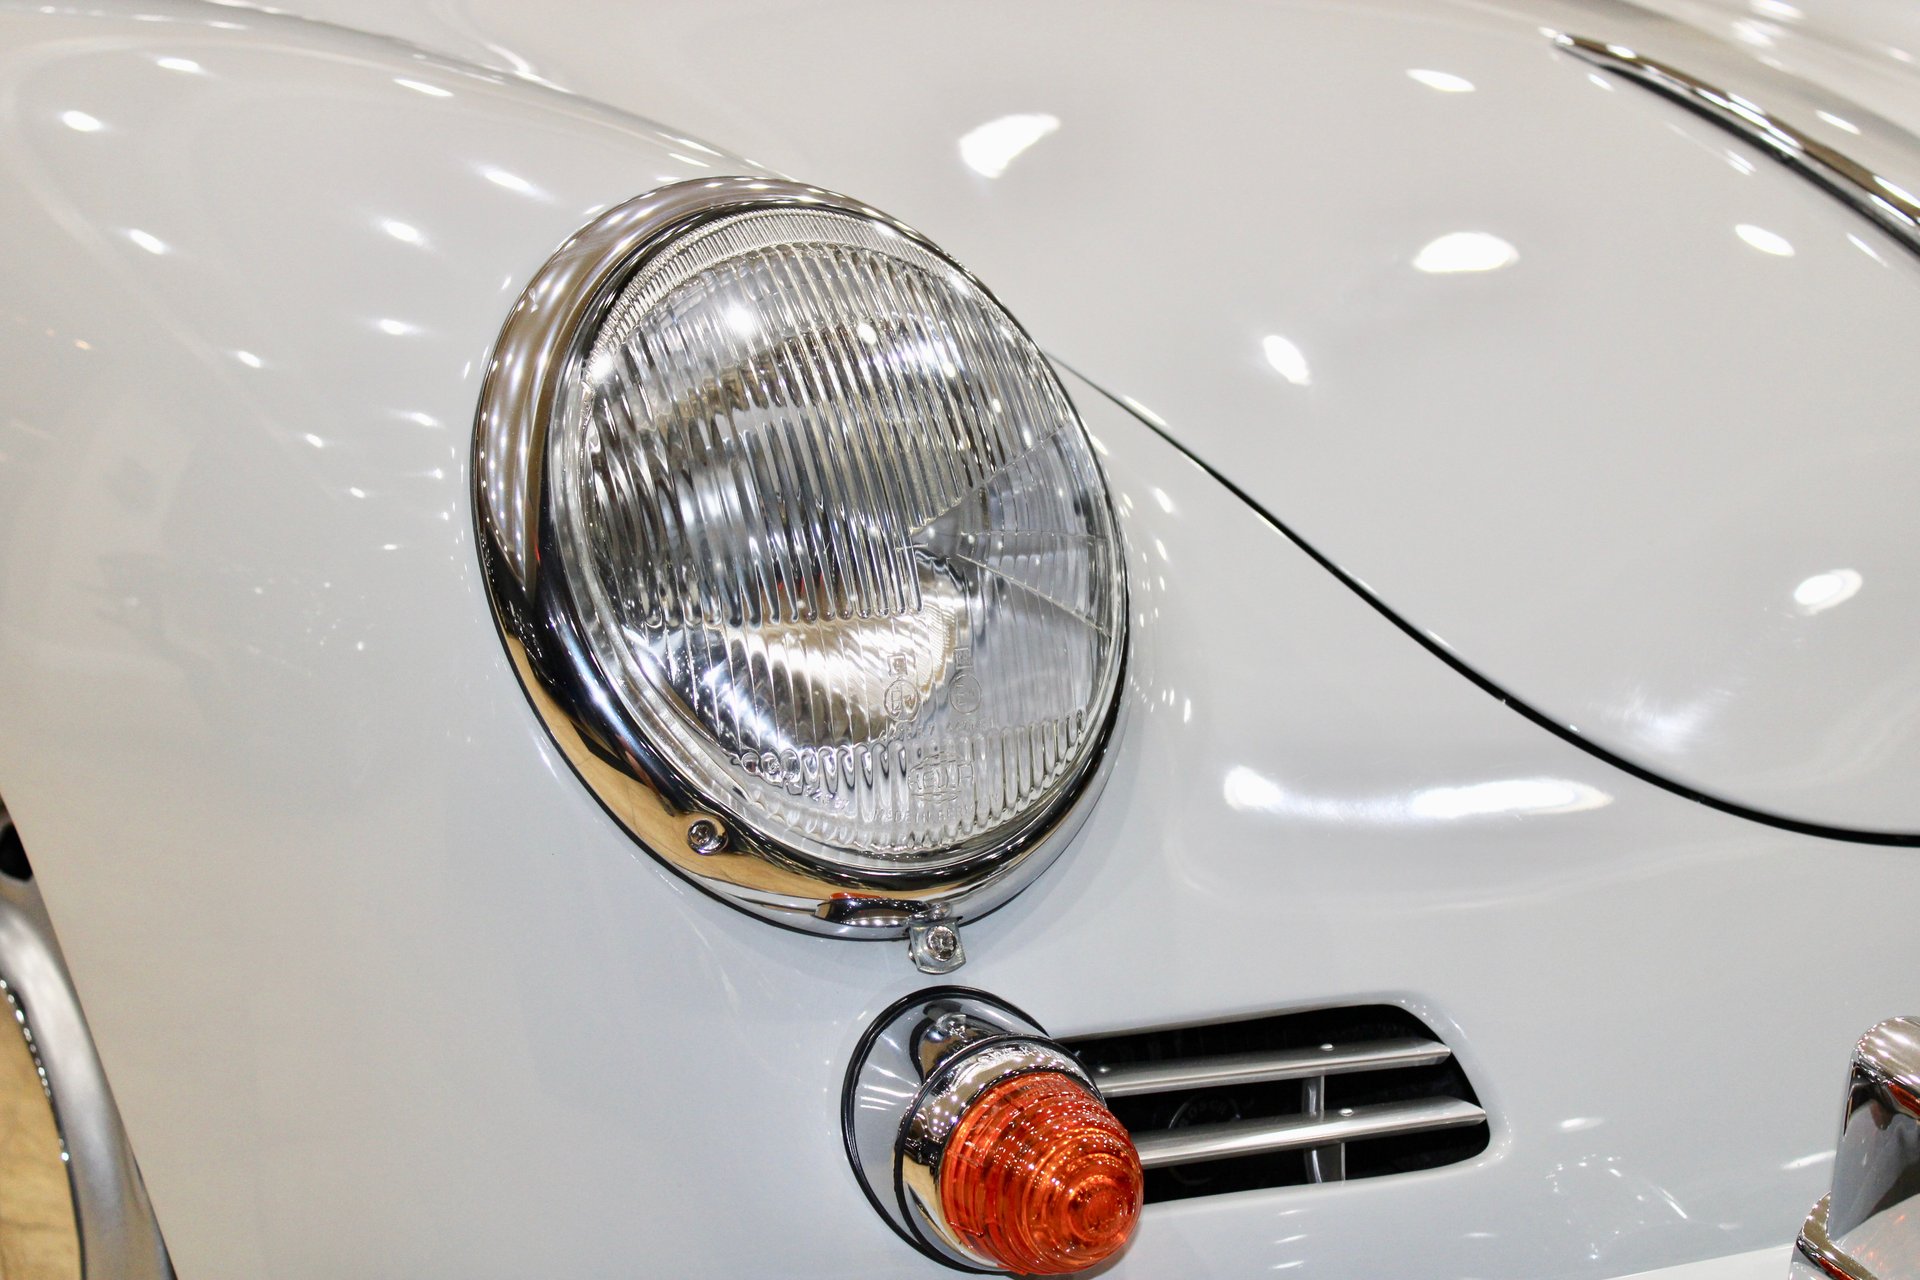 For Sale 1965 Porsche 356